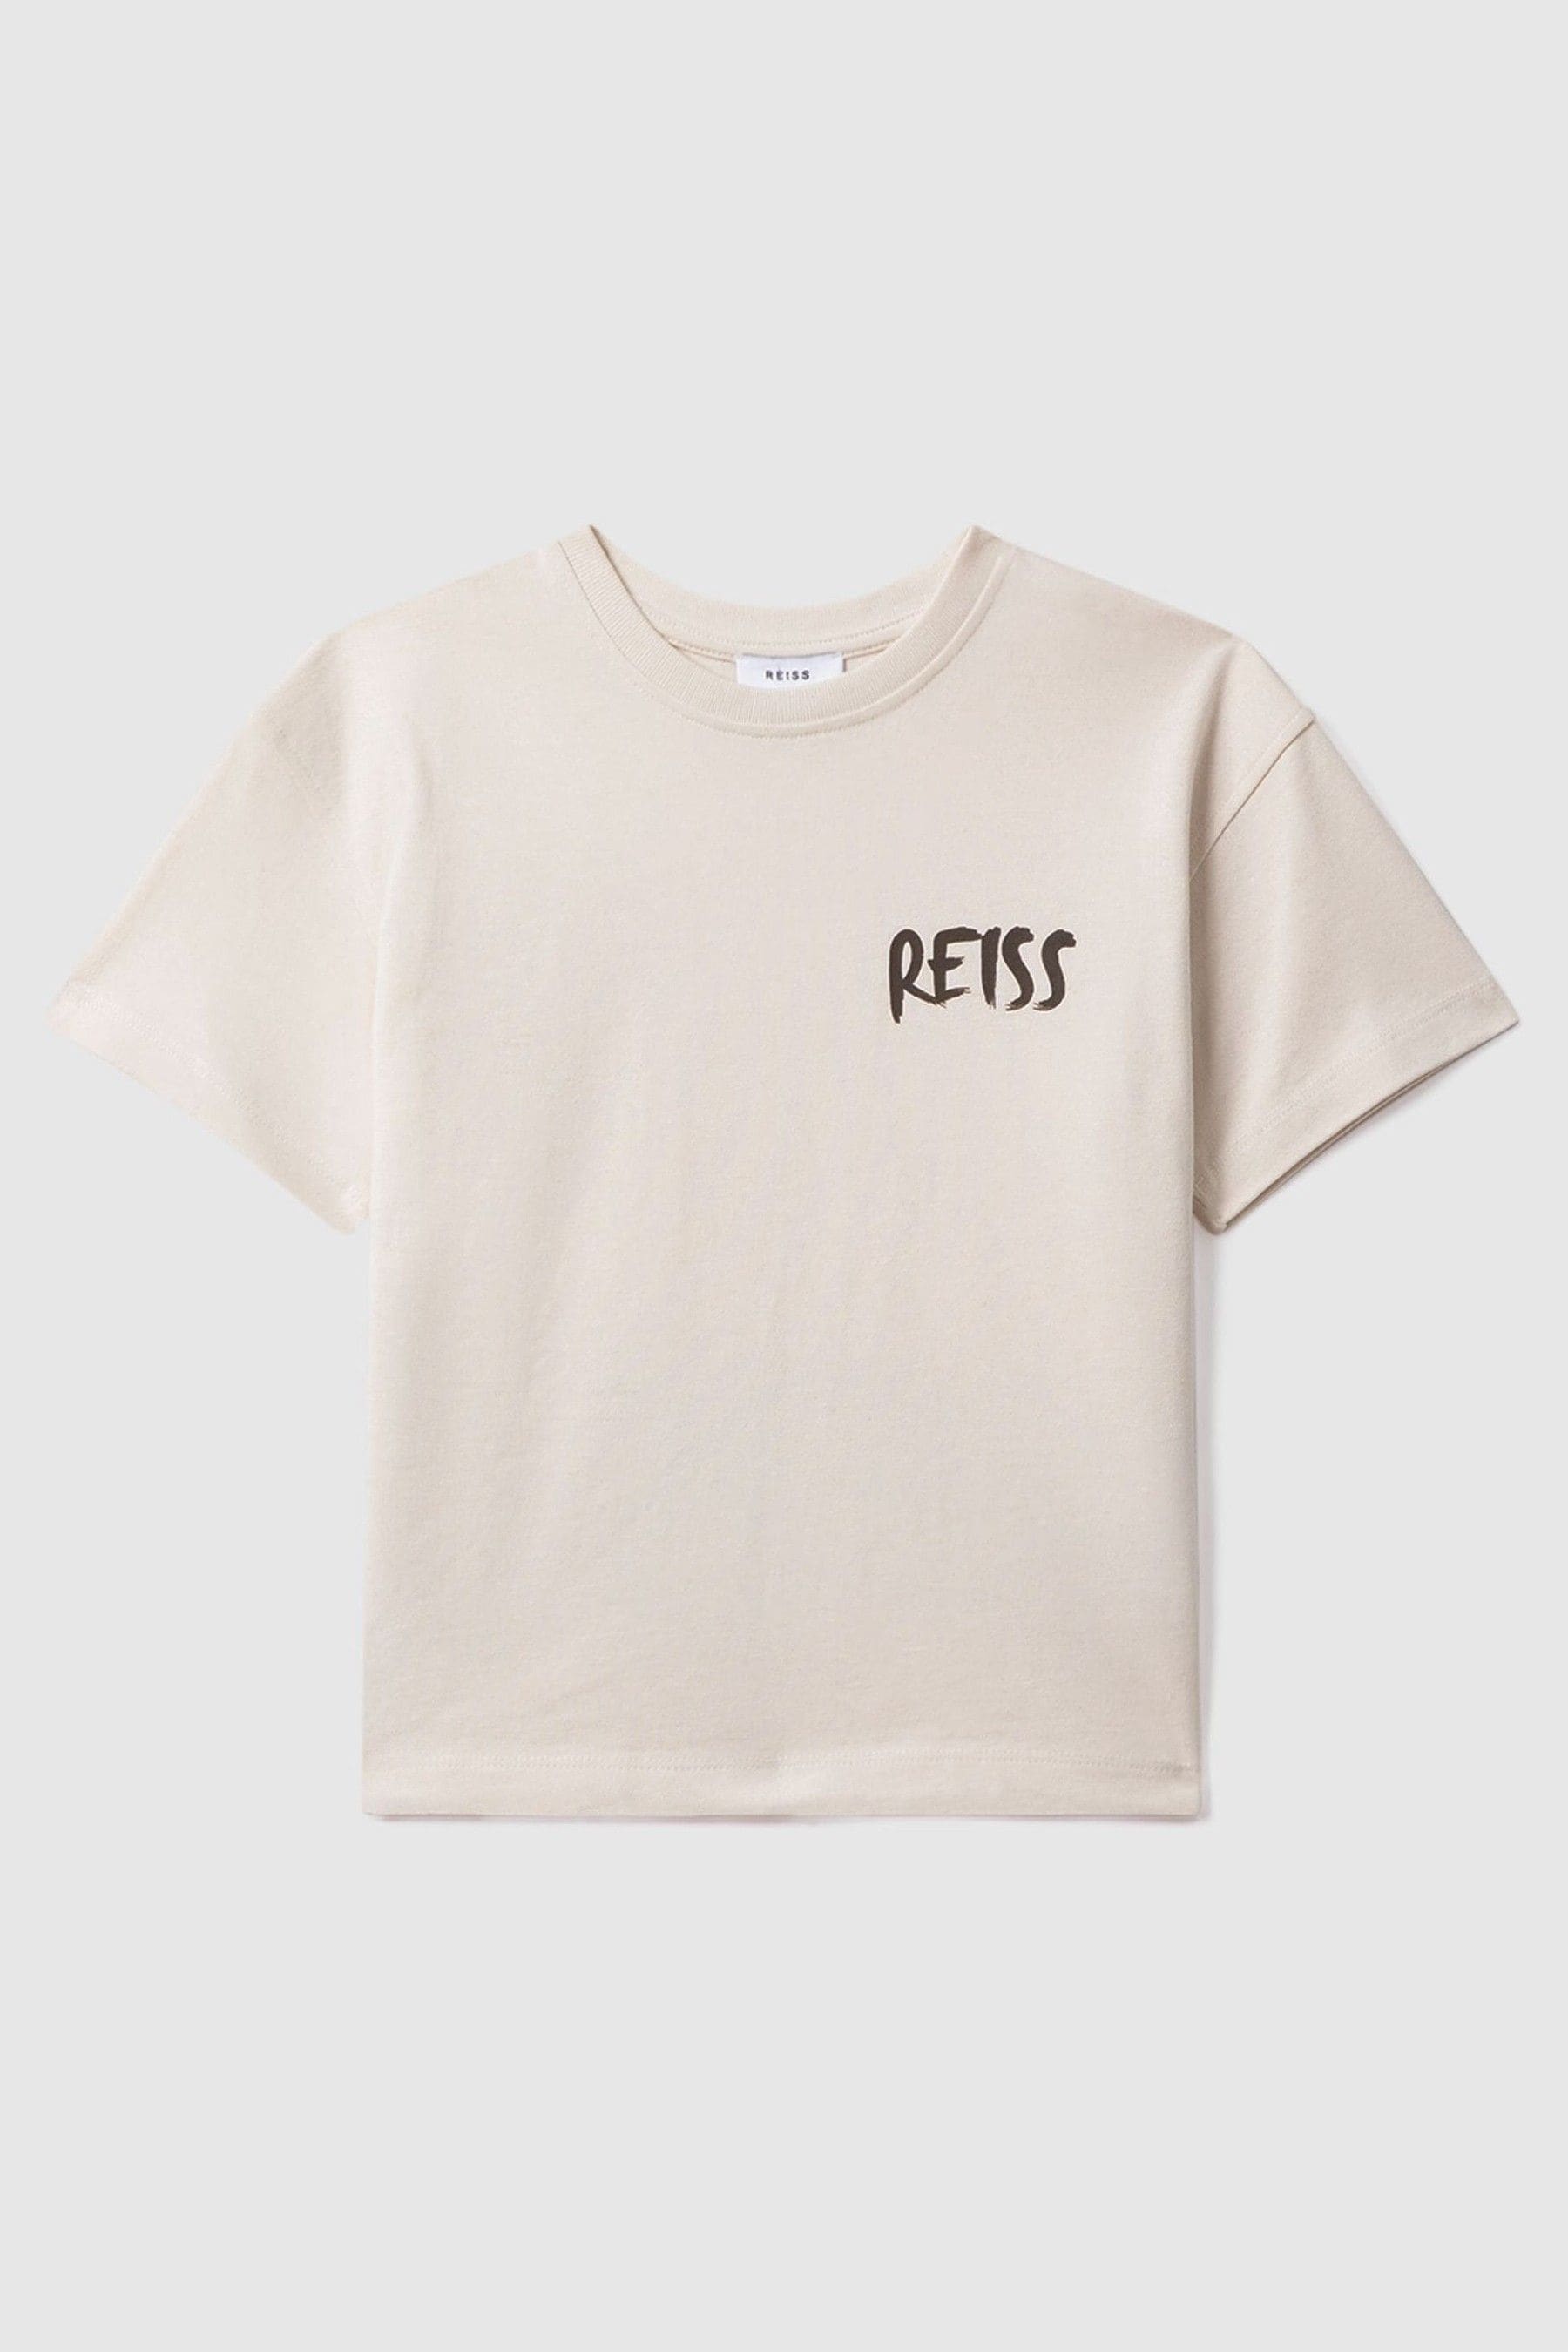 Reiss Kids' Abbott - Ecru Cotton Motif T-shirt, Uk 13-14 Yrs